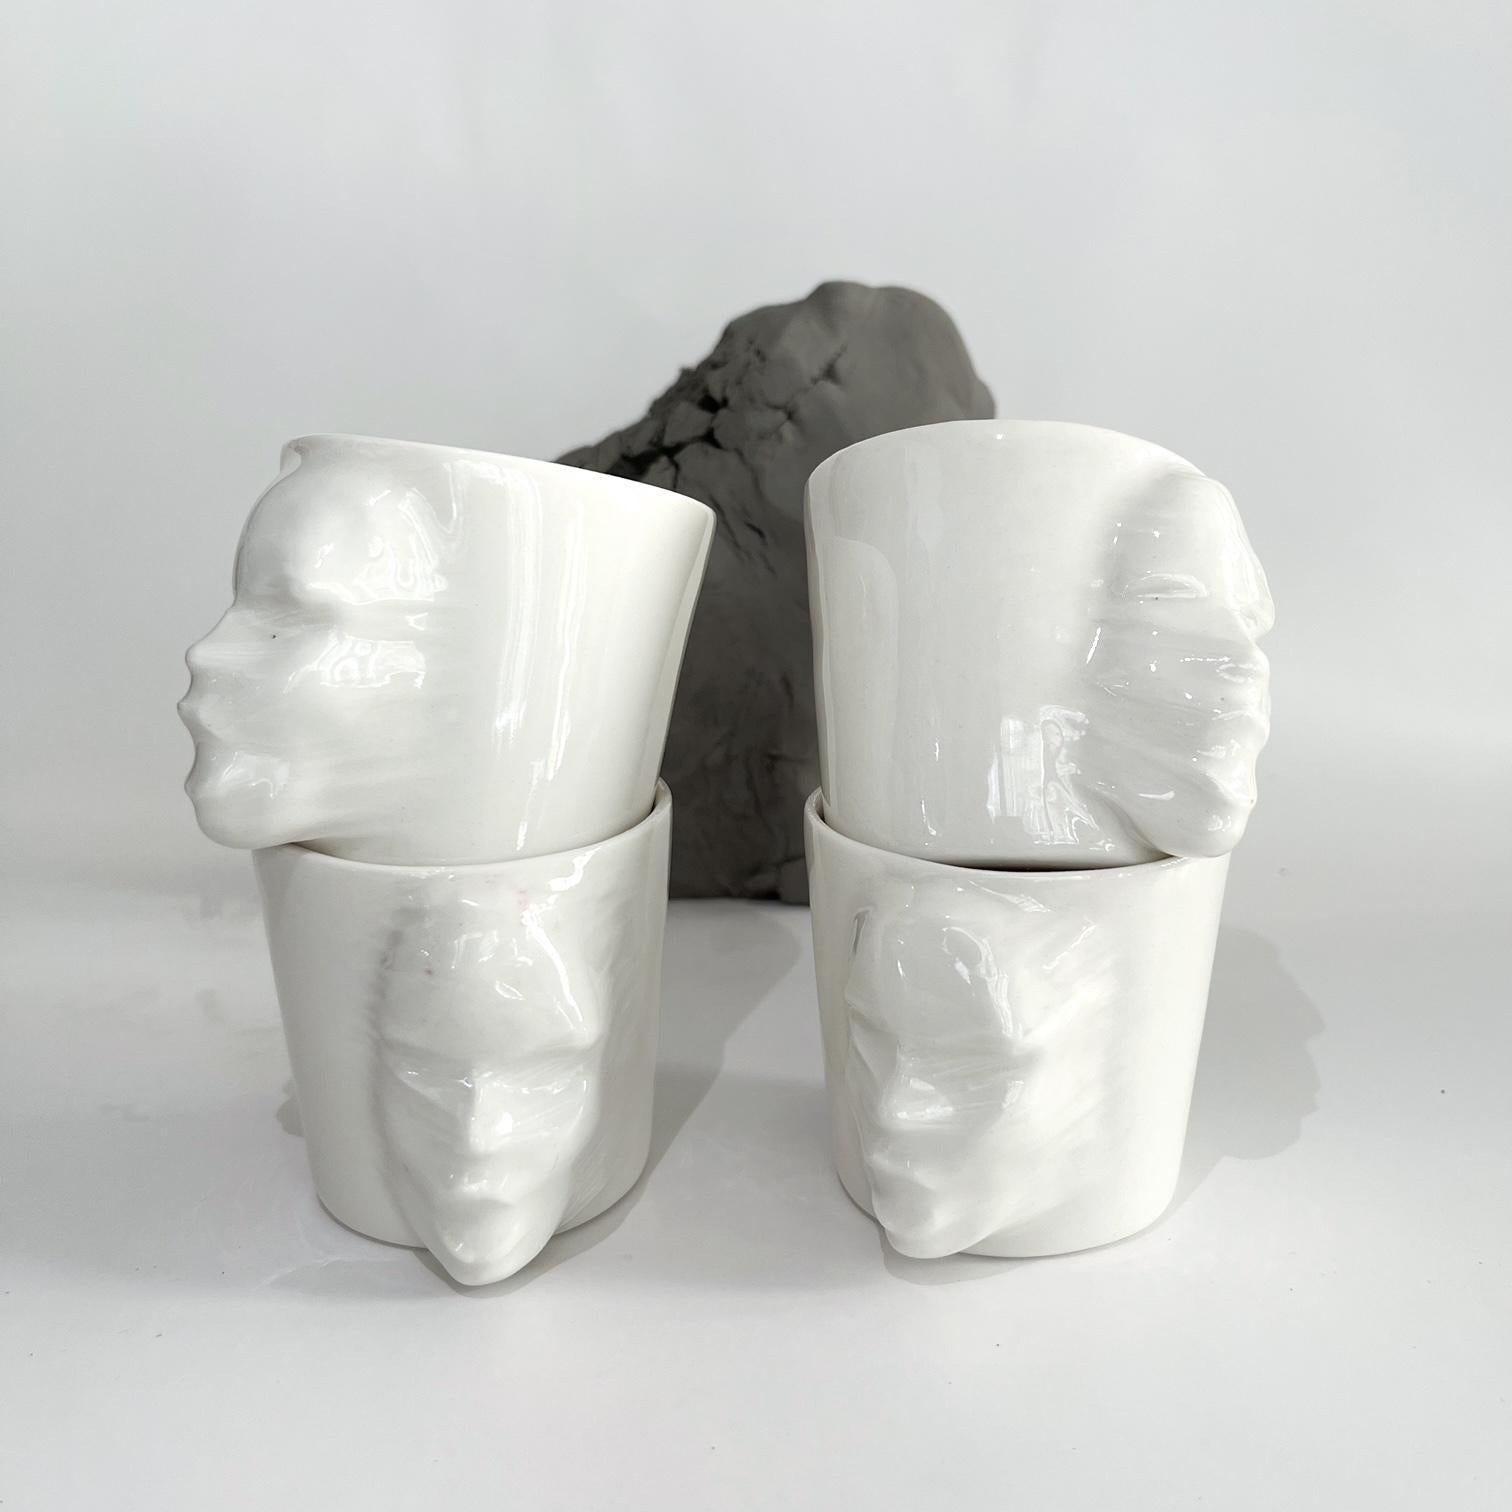 A set of 4 sculptural porcelain cups handmade by the ceramic artist Hulya Sozer. 
Food safe glaze.
Dishwasher safe.

Height: 6cm / Depth: 8cm / Diameter: 6cm
Volume: 100ml
Set includes 4 porcelain cups of 100ml

Hulya Sozer is a ceramic artist,